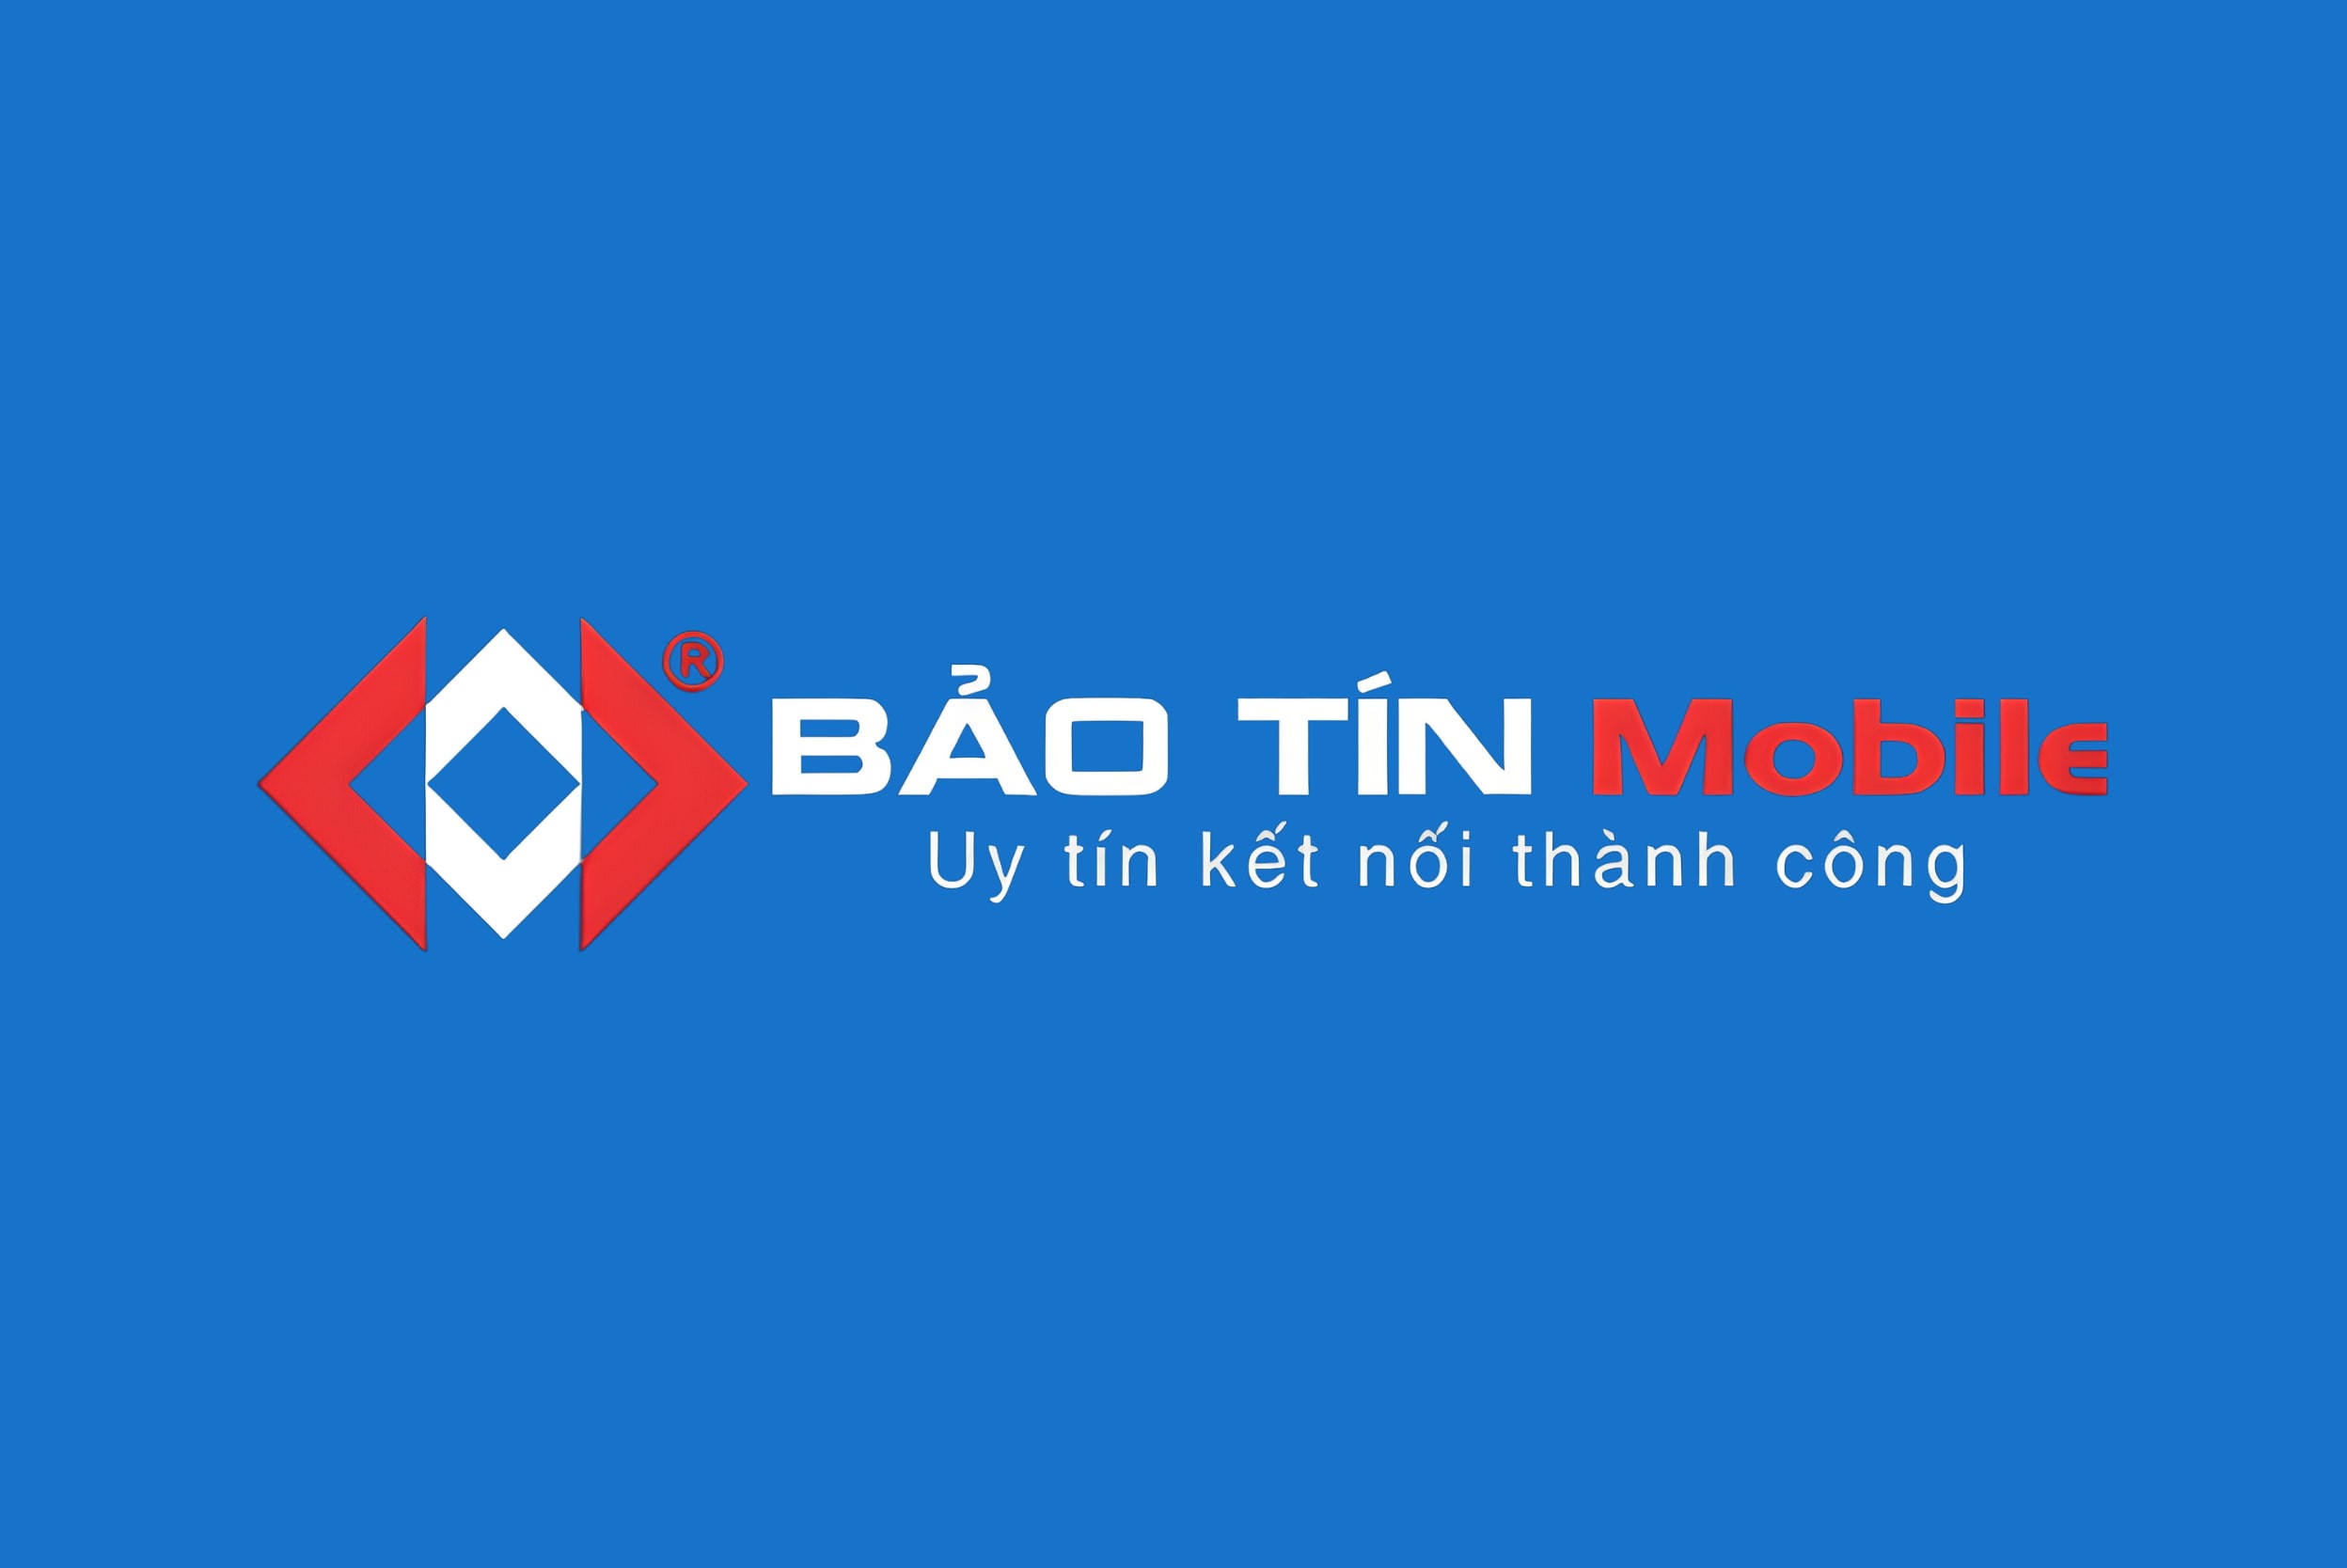 bao-tin-mobile-logo